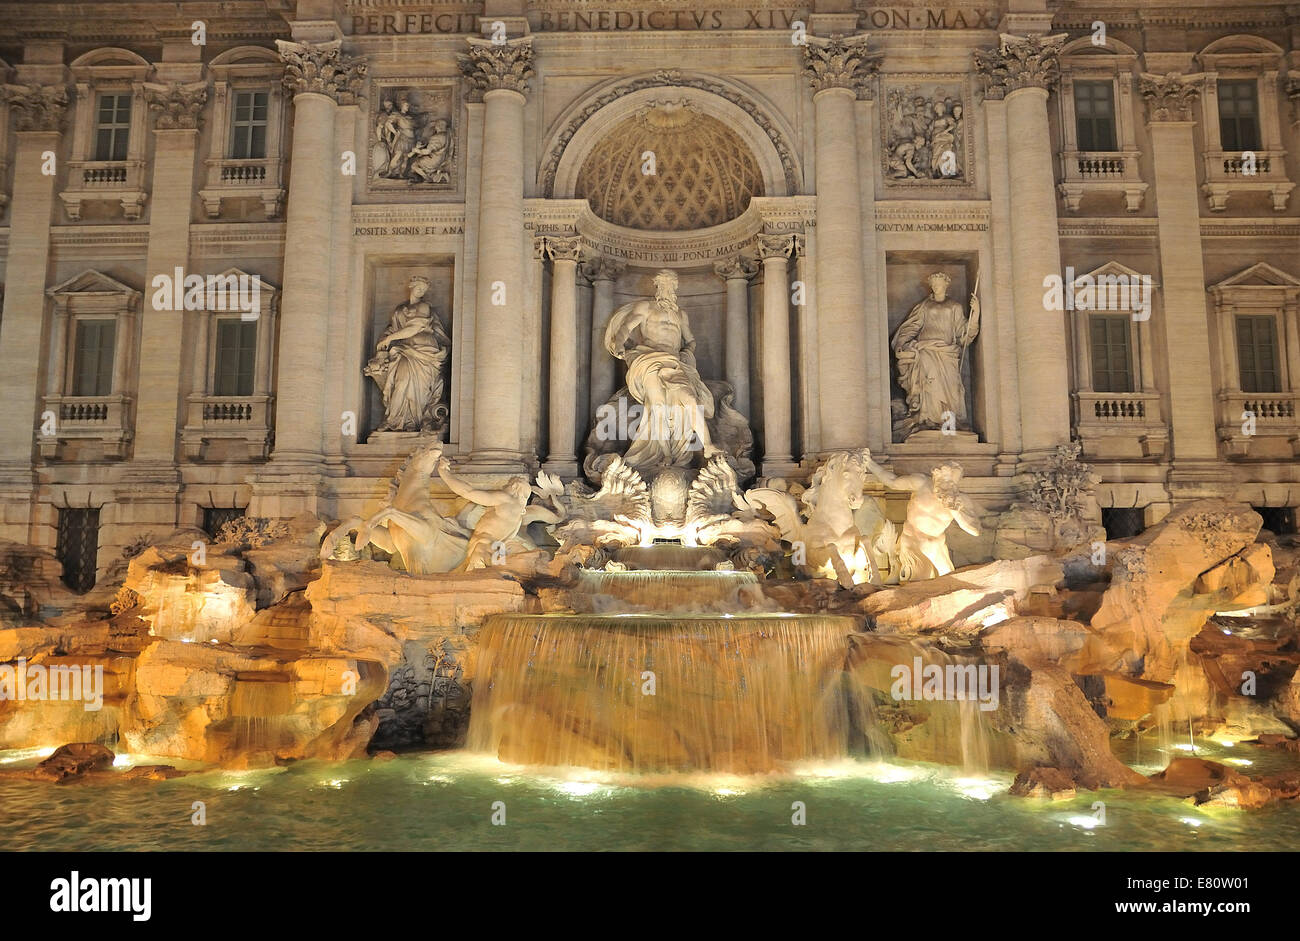 Fontaine de Trevi à Rome - Italie. (Fontana di Trevi) est un des plus célèbres monuments de Rome. Banque D'Images